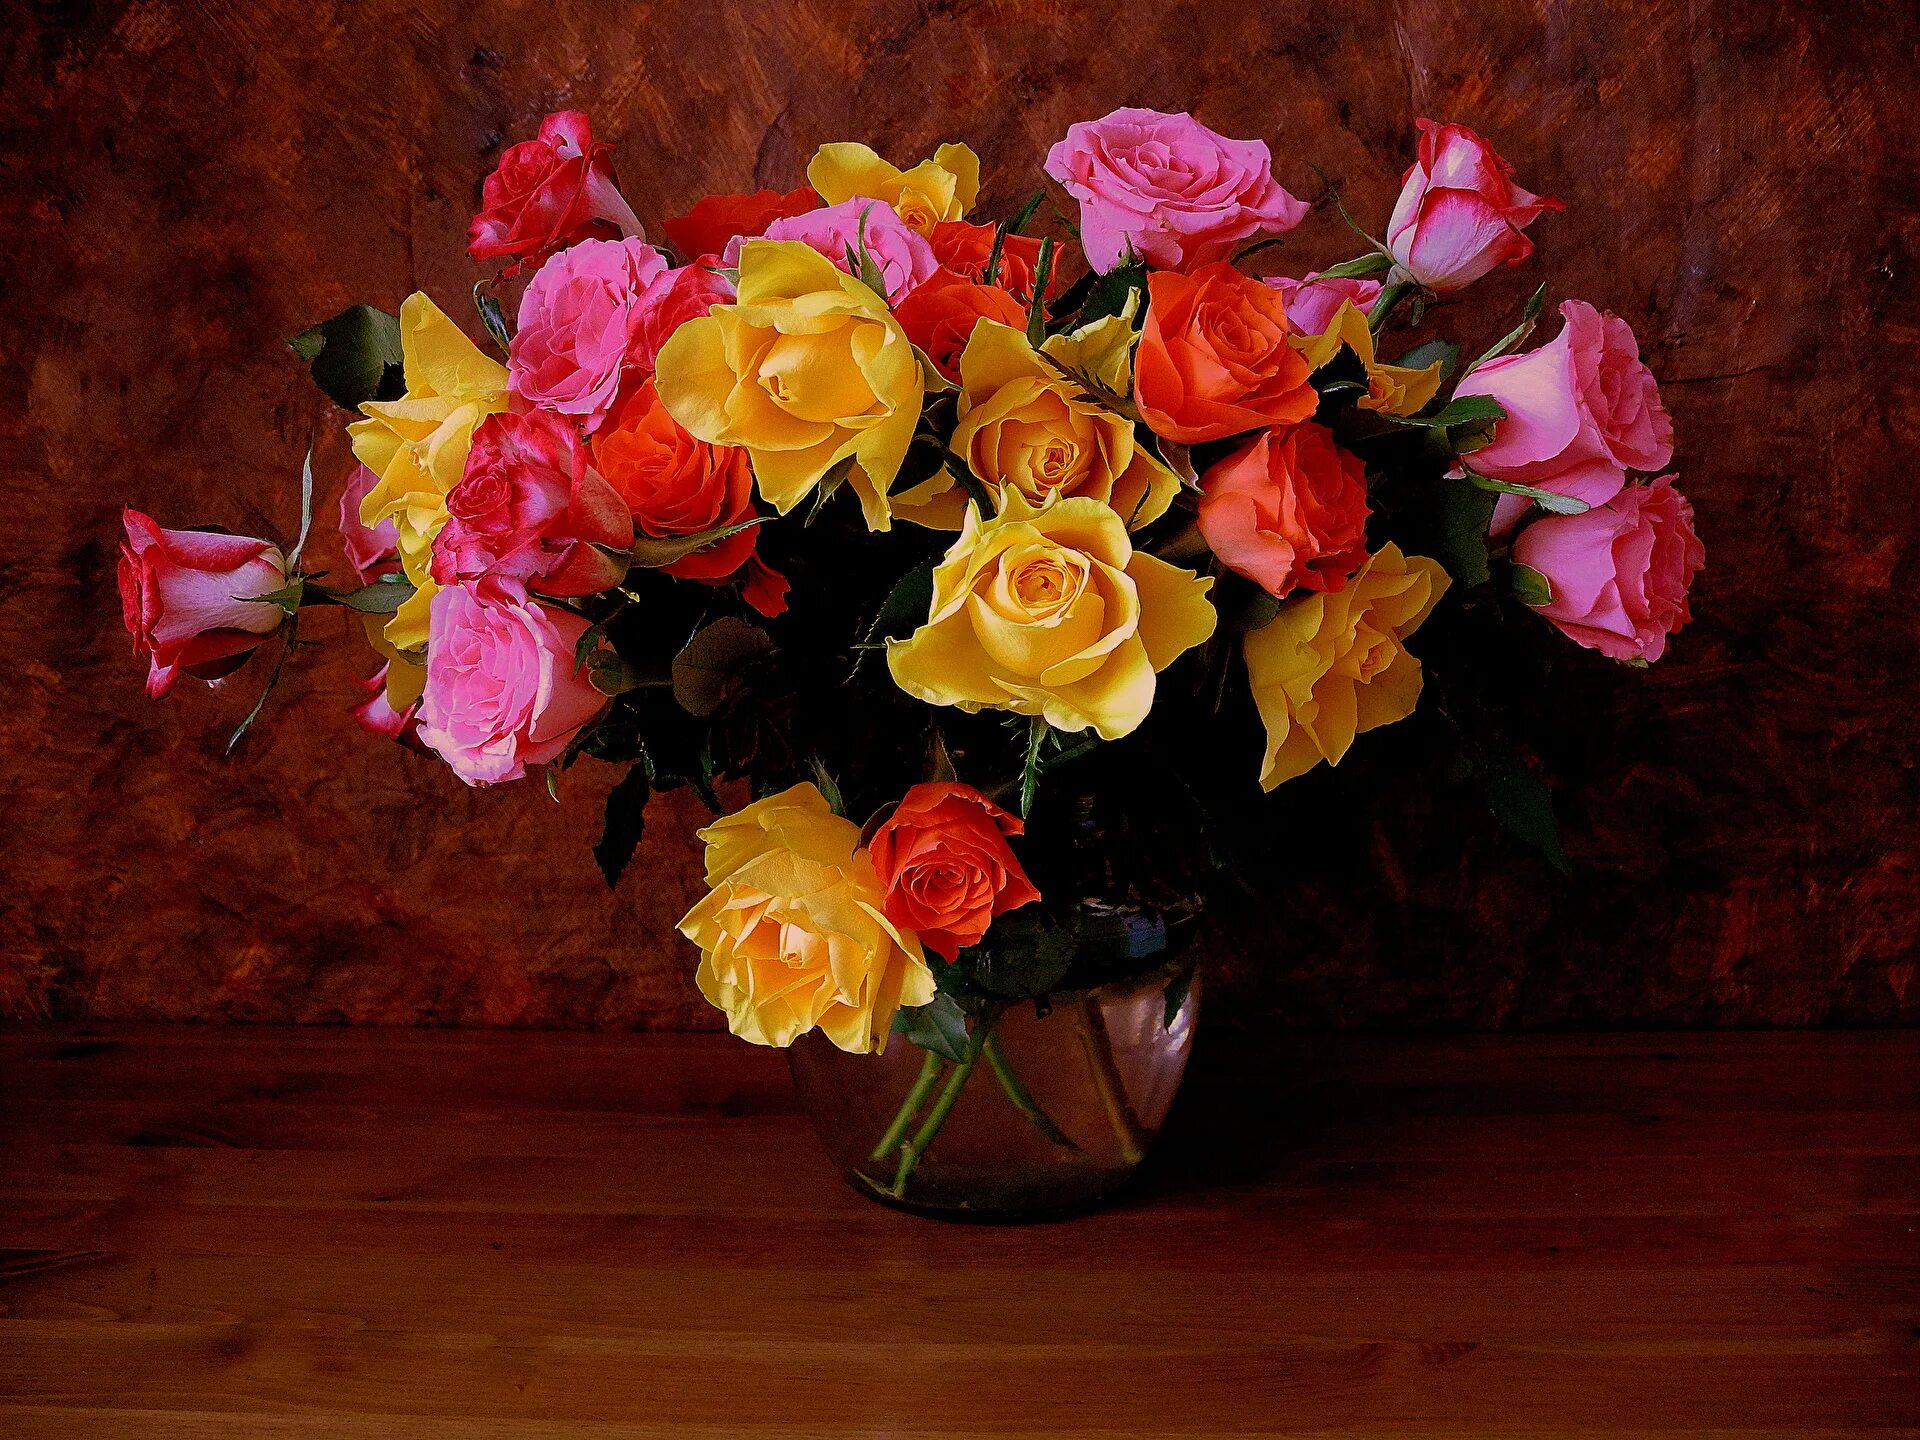 Букеты роз в вазе на столе. Красивый букет в вазе. Натюрморт. Шикарные цветы в вазе. Розы в вазе.